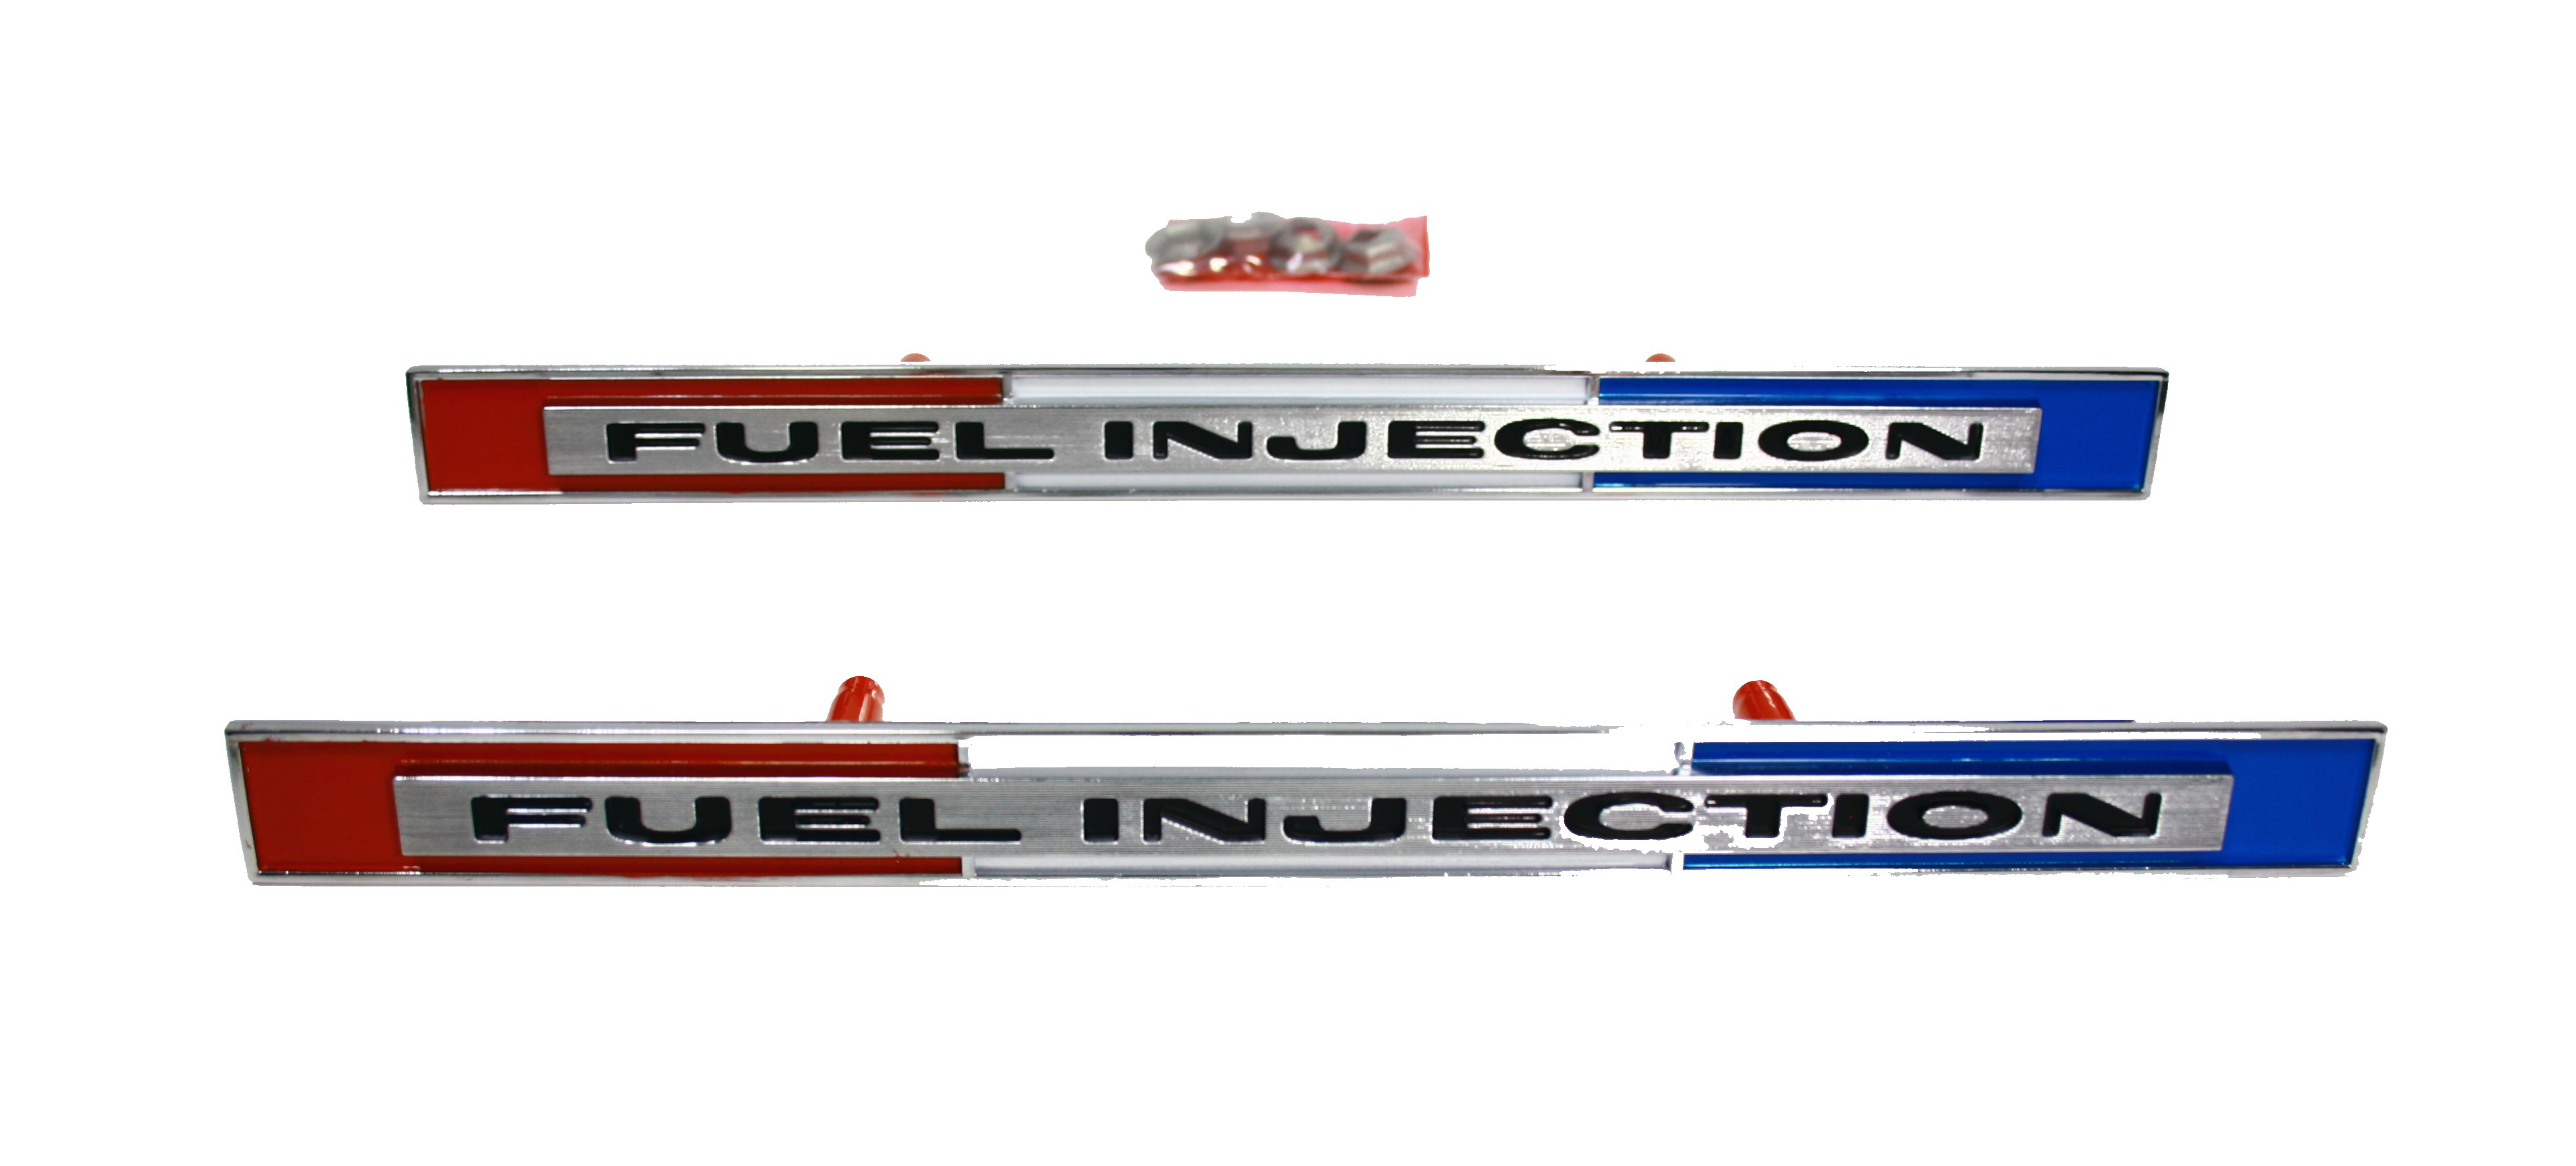 Corvette Fuel Injection Emblem - Pair